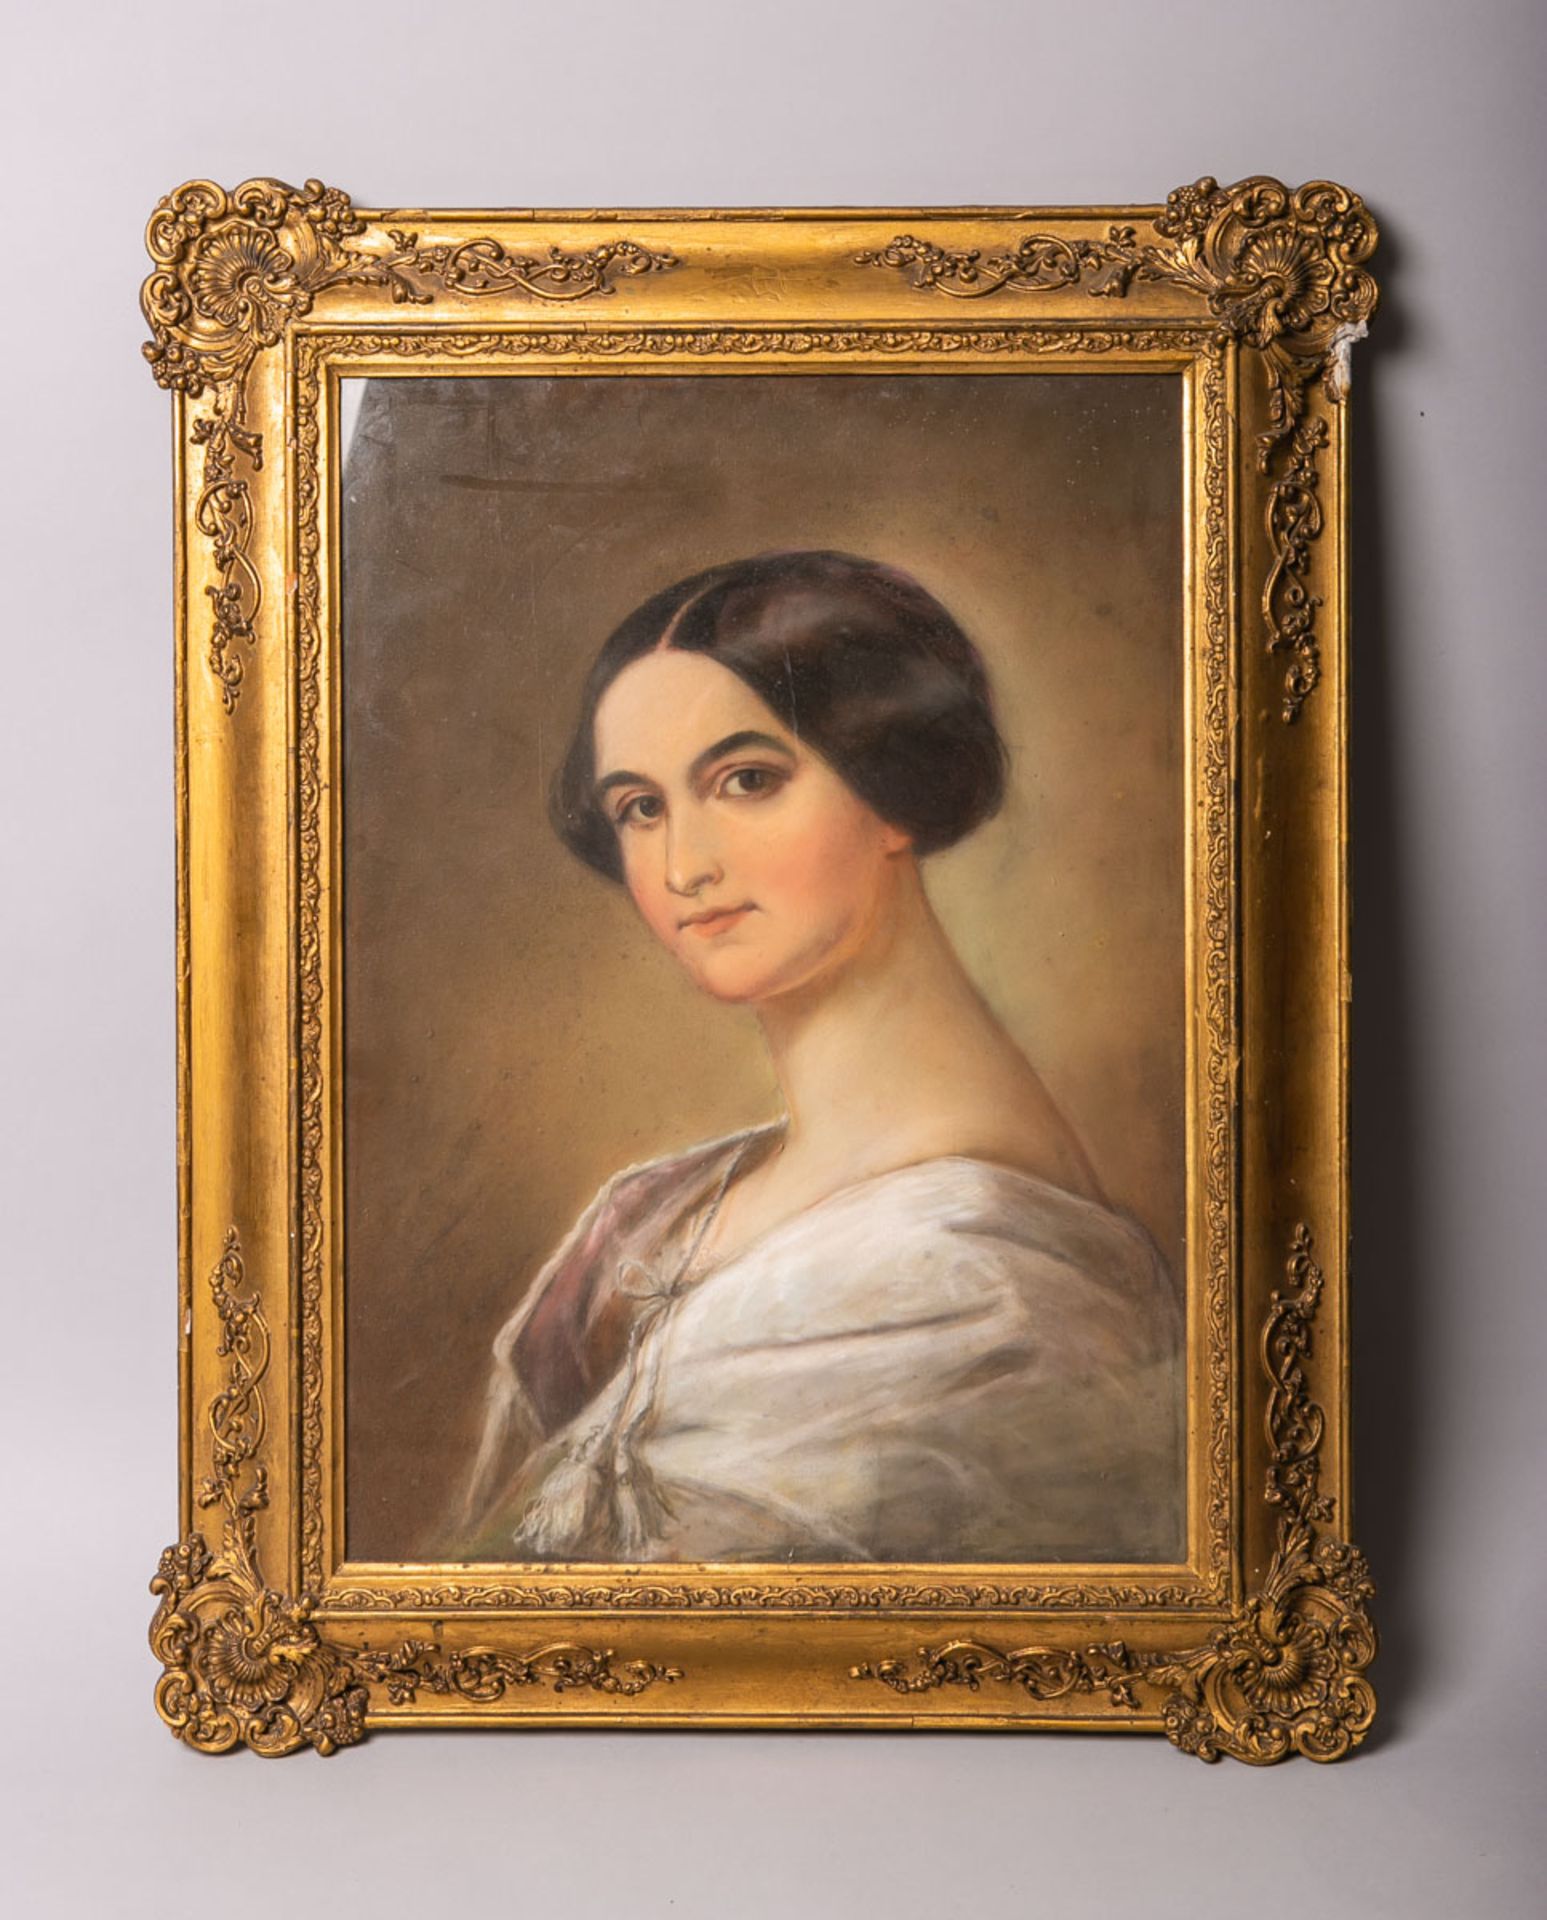 Künstler/in unbekannt (Biedermeier, um 1830/50er Jahre), Portrait einer jungen Frau